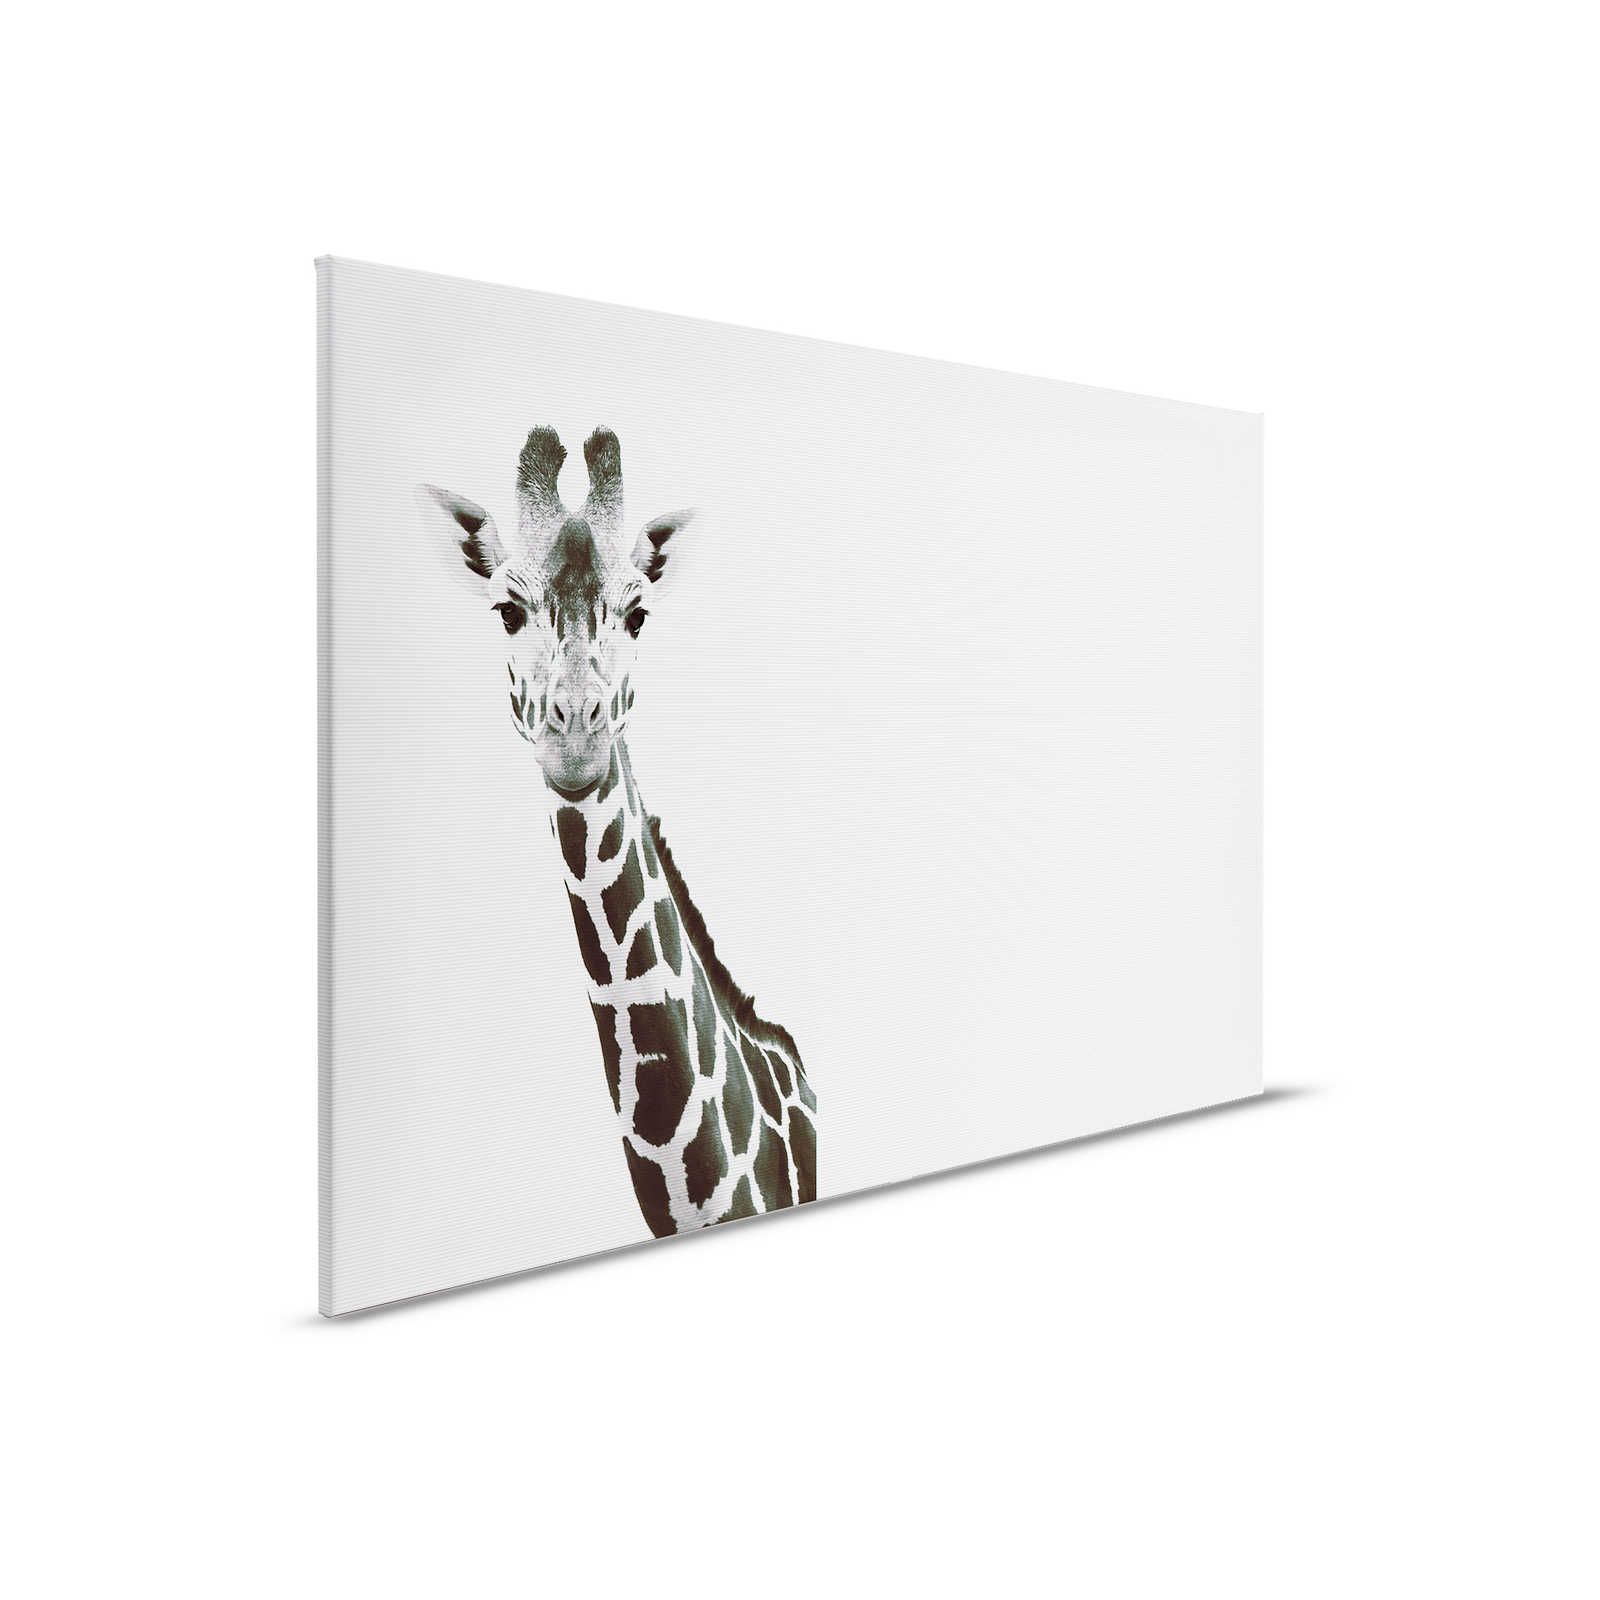 Giraffen Canvas Schilderij XXL Zwart Wit Design - 0.90 m x 0.60 m
